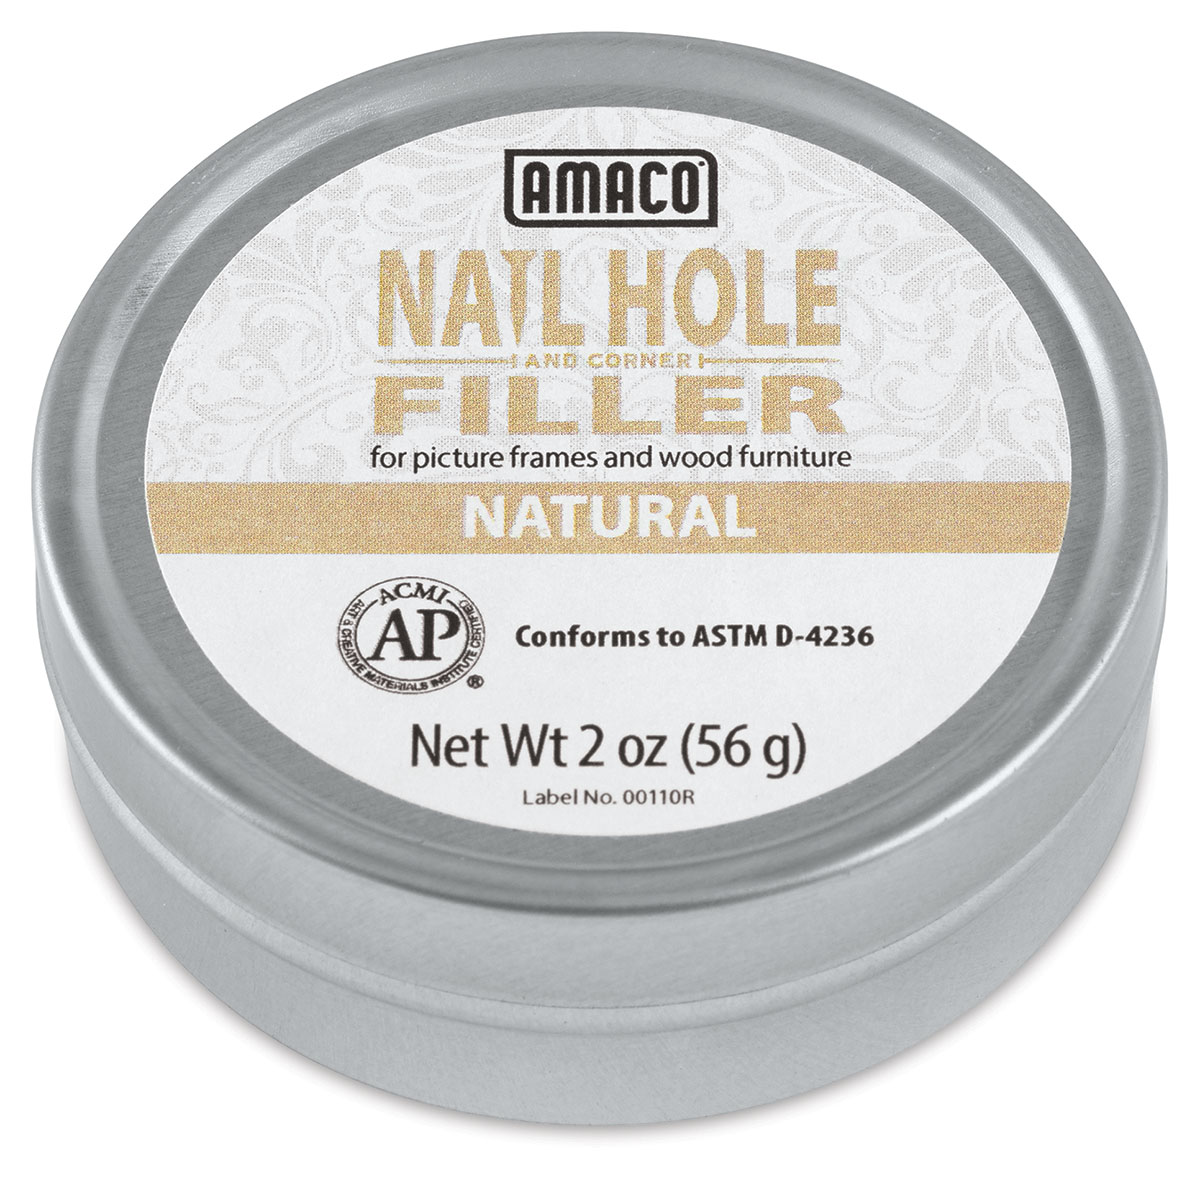 Amaco Nail Hole and Corner Filler - 2 oz, Natural